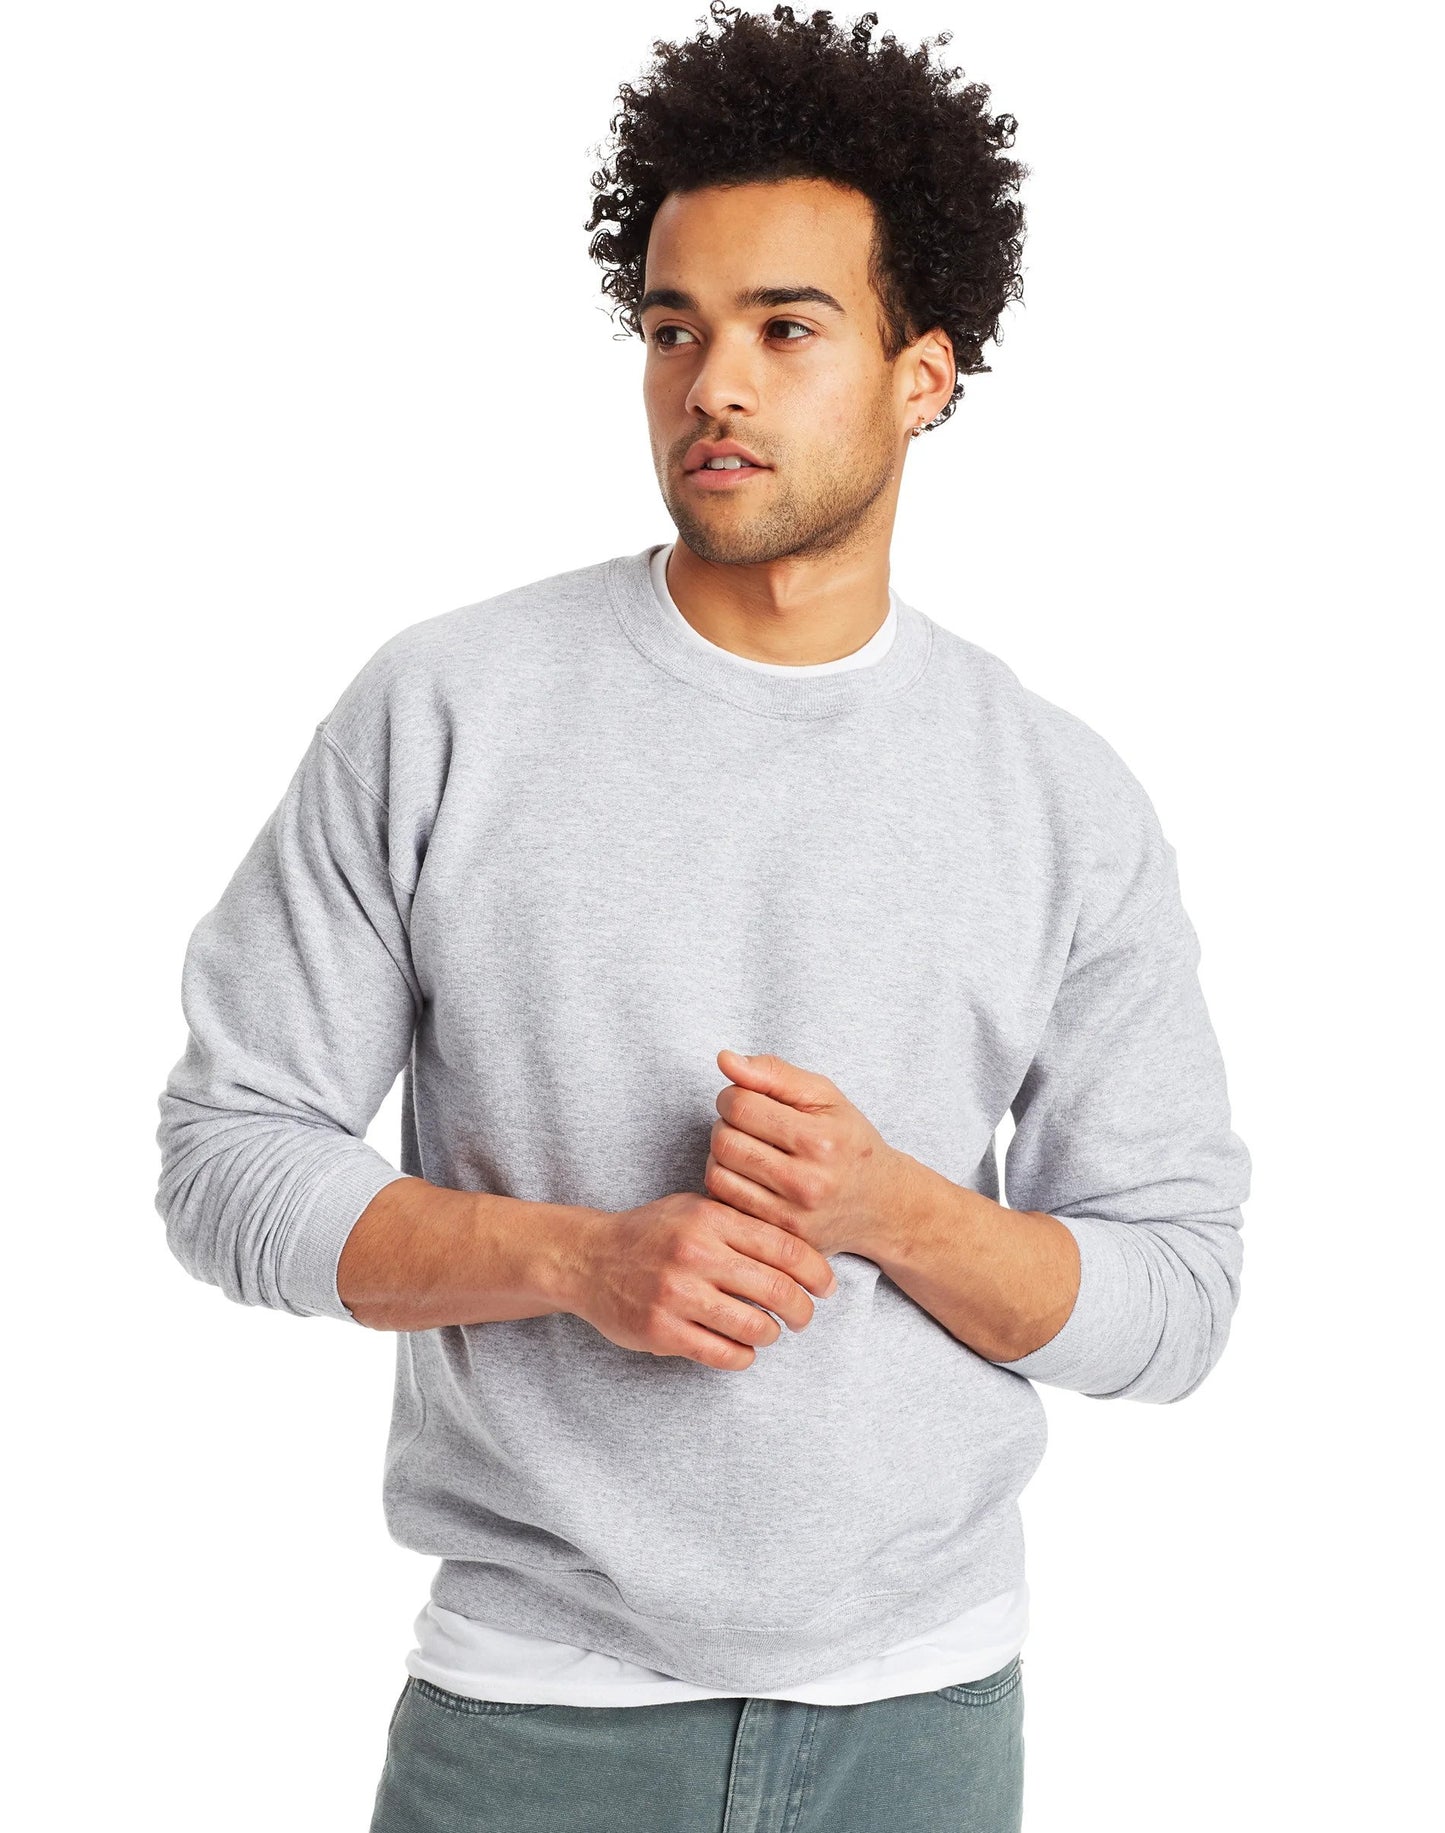 Men's ComfortBlend EcoSmart Fleece Crew Sweatshirt